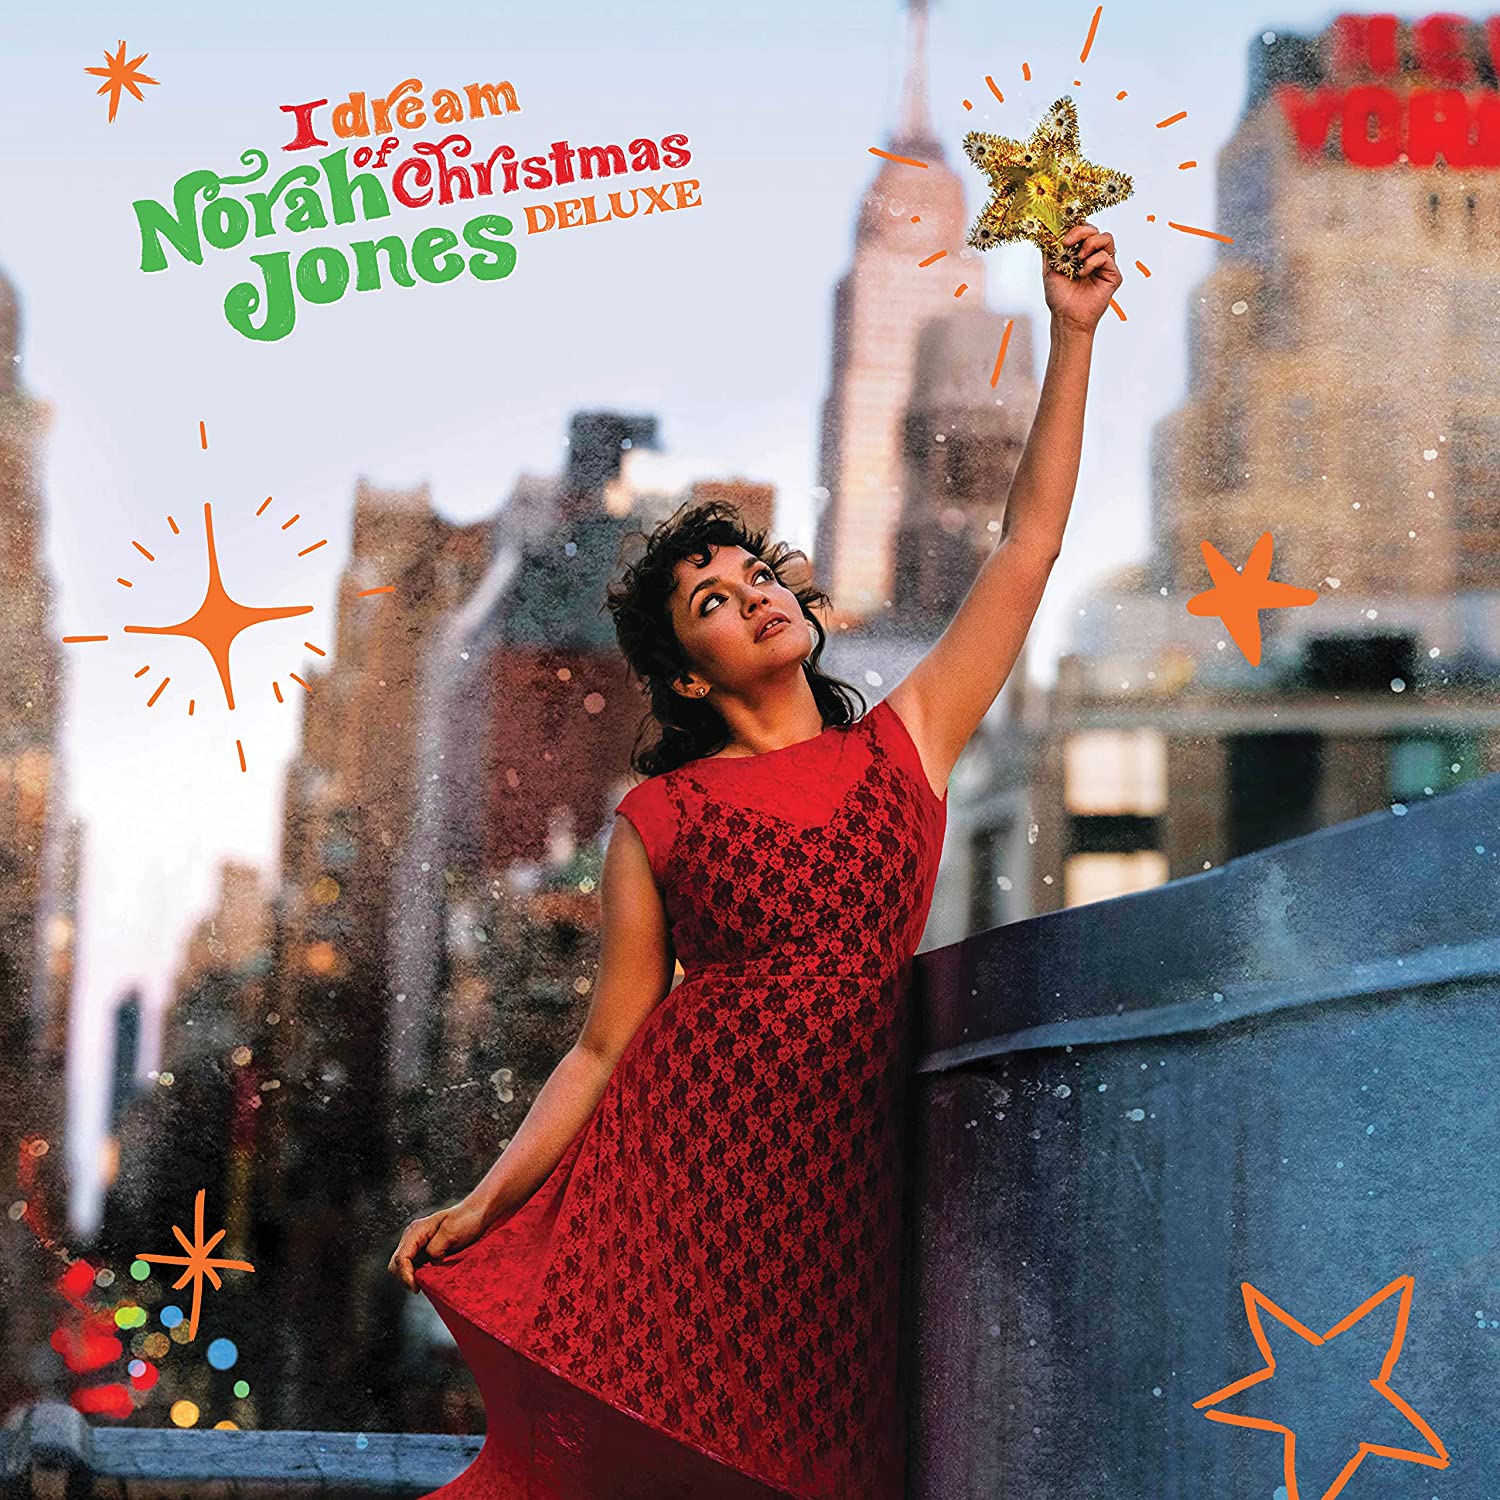 Norah Jones - I Dream Of Christmas (2022 Deluxe) - 2 x LP